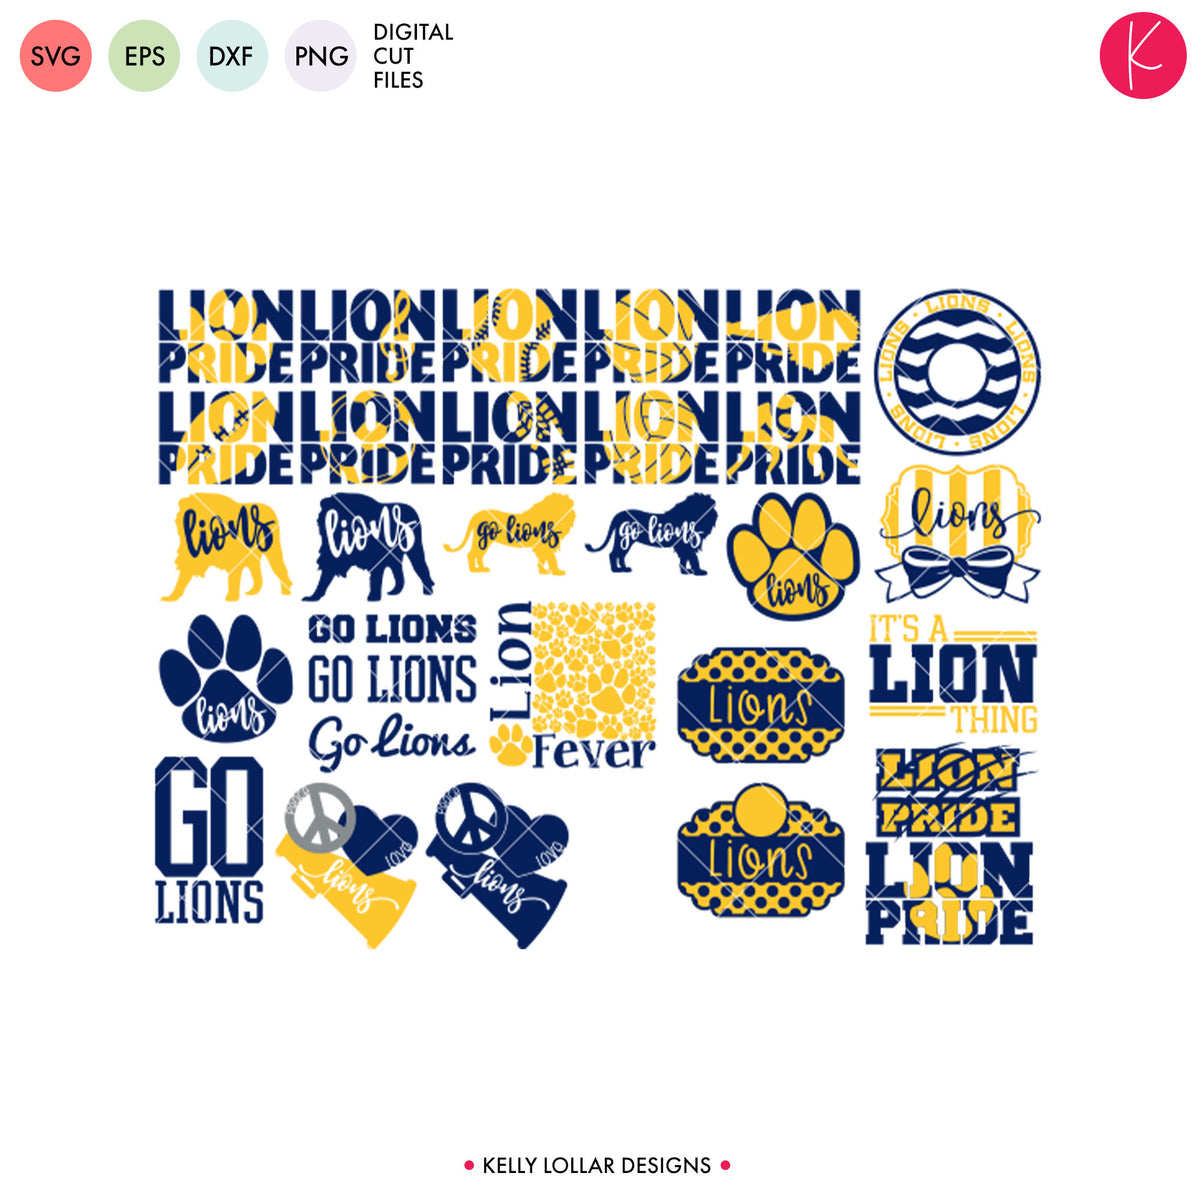 Lions Mascot Bundle | SVG DXF EPS PNG Cut Files